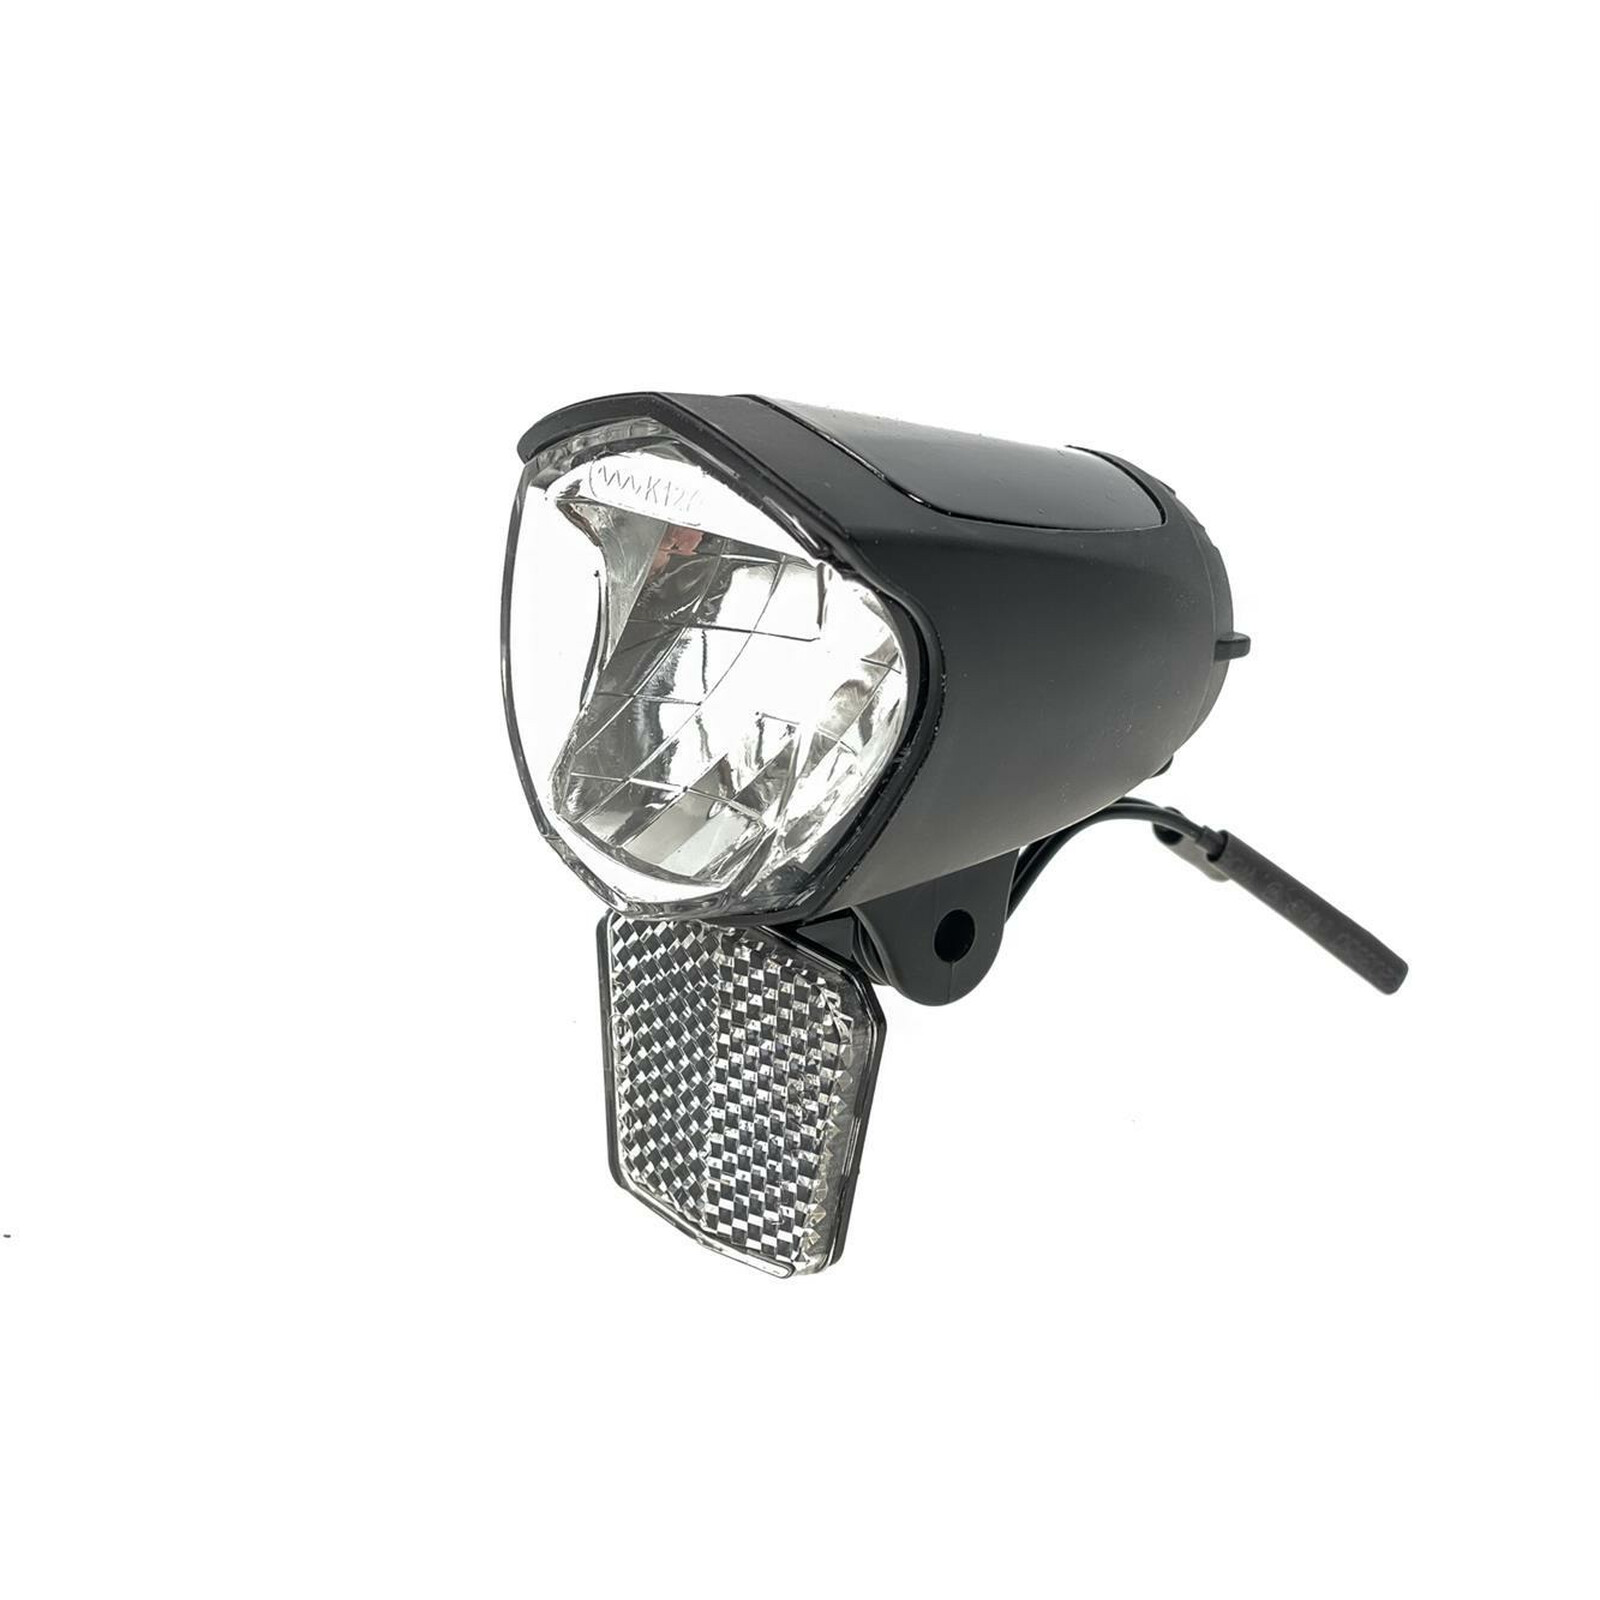 E-Bike Fahrrad Vorderlicht Licht 30 oder 70 Lux mit Reflektor Beleuchtung Rad 